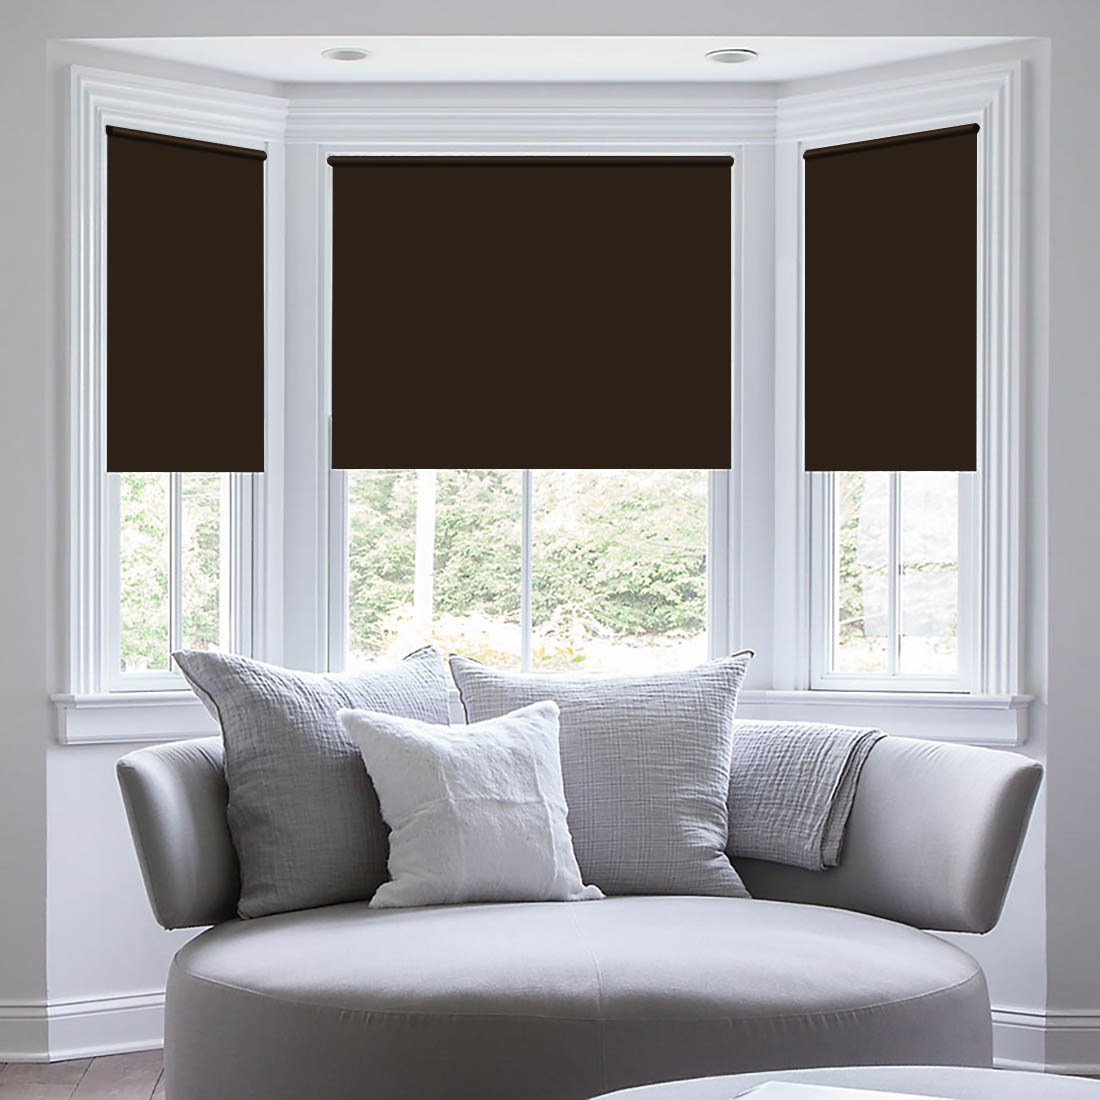 фото Штора рулонная Sleep iX "Eclipce", цвет: коричневый, серебристый, высота 172 см, ширина 34 см